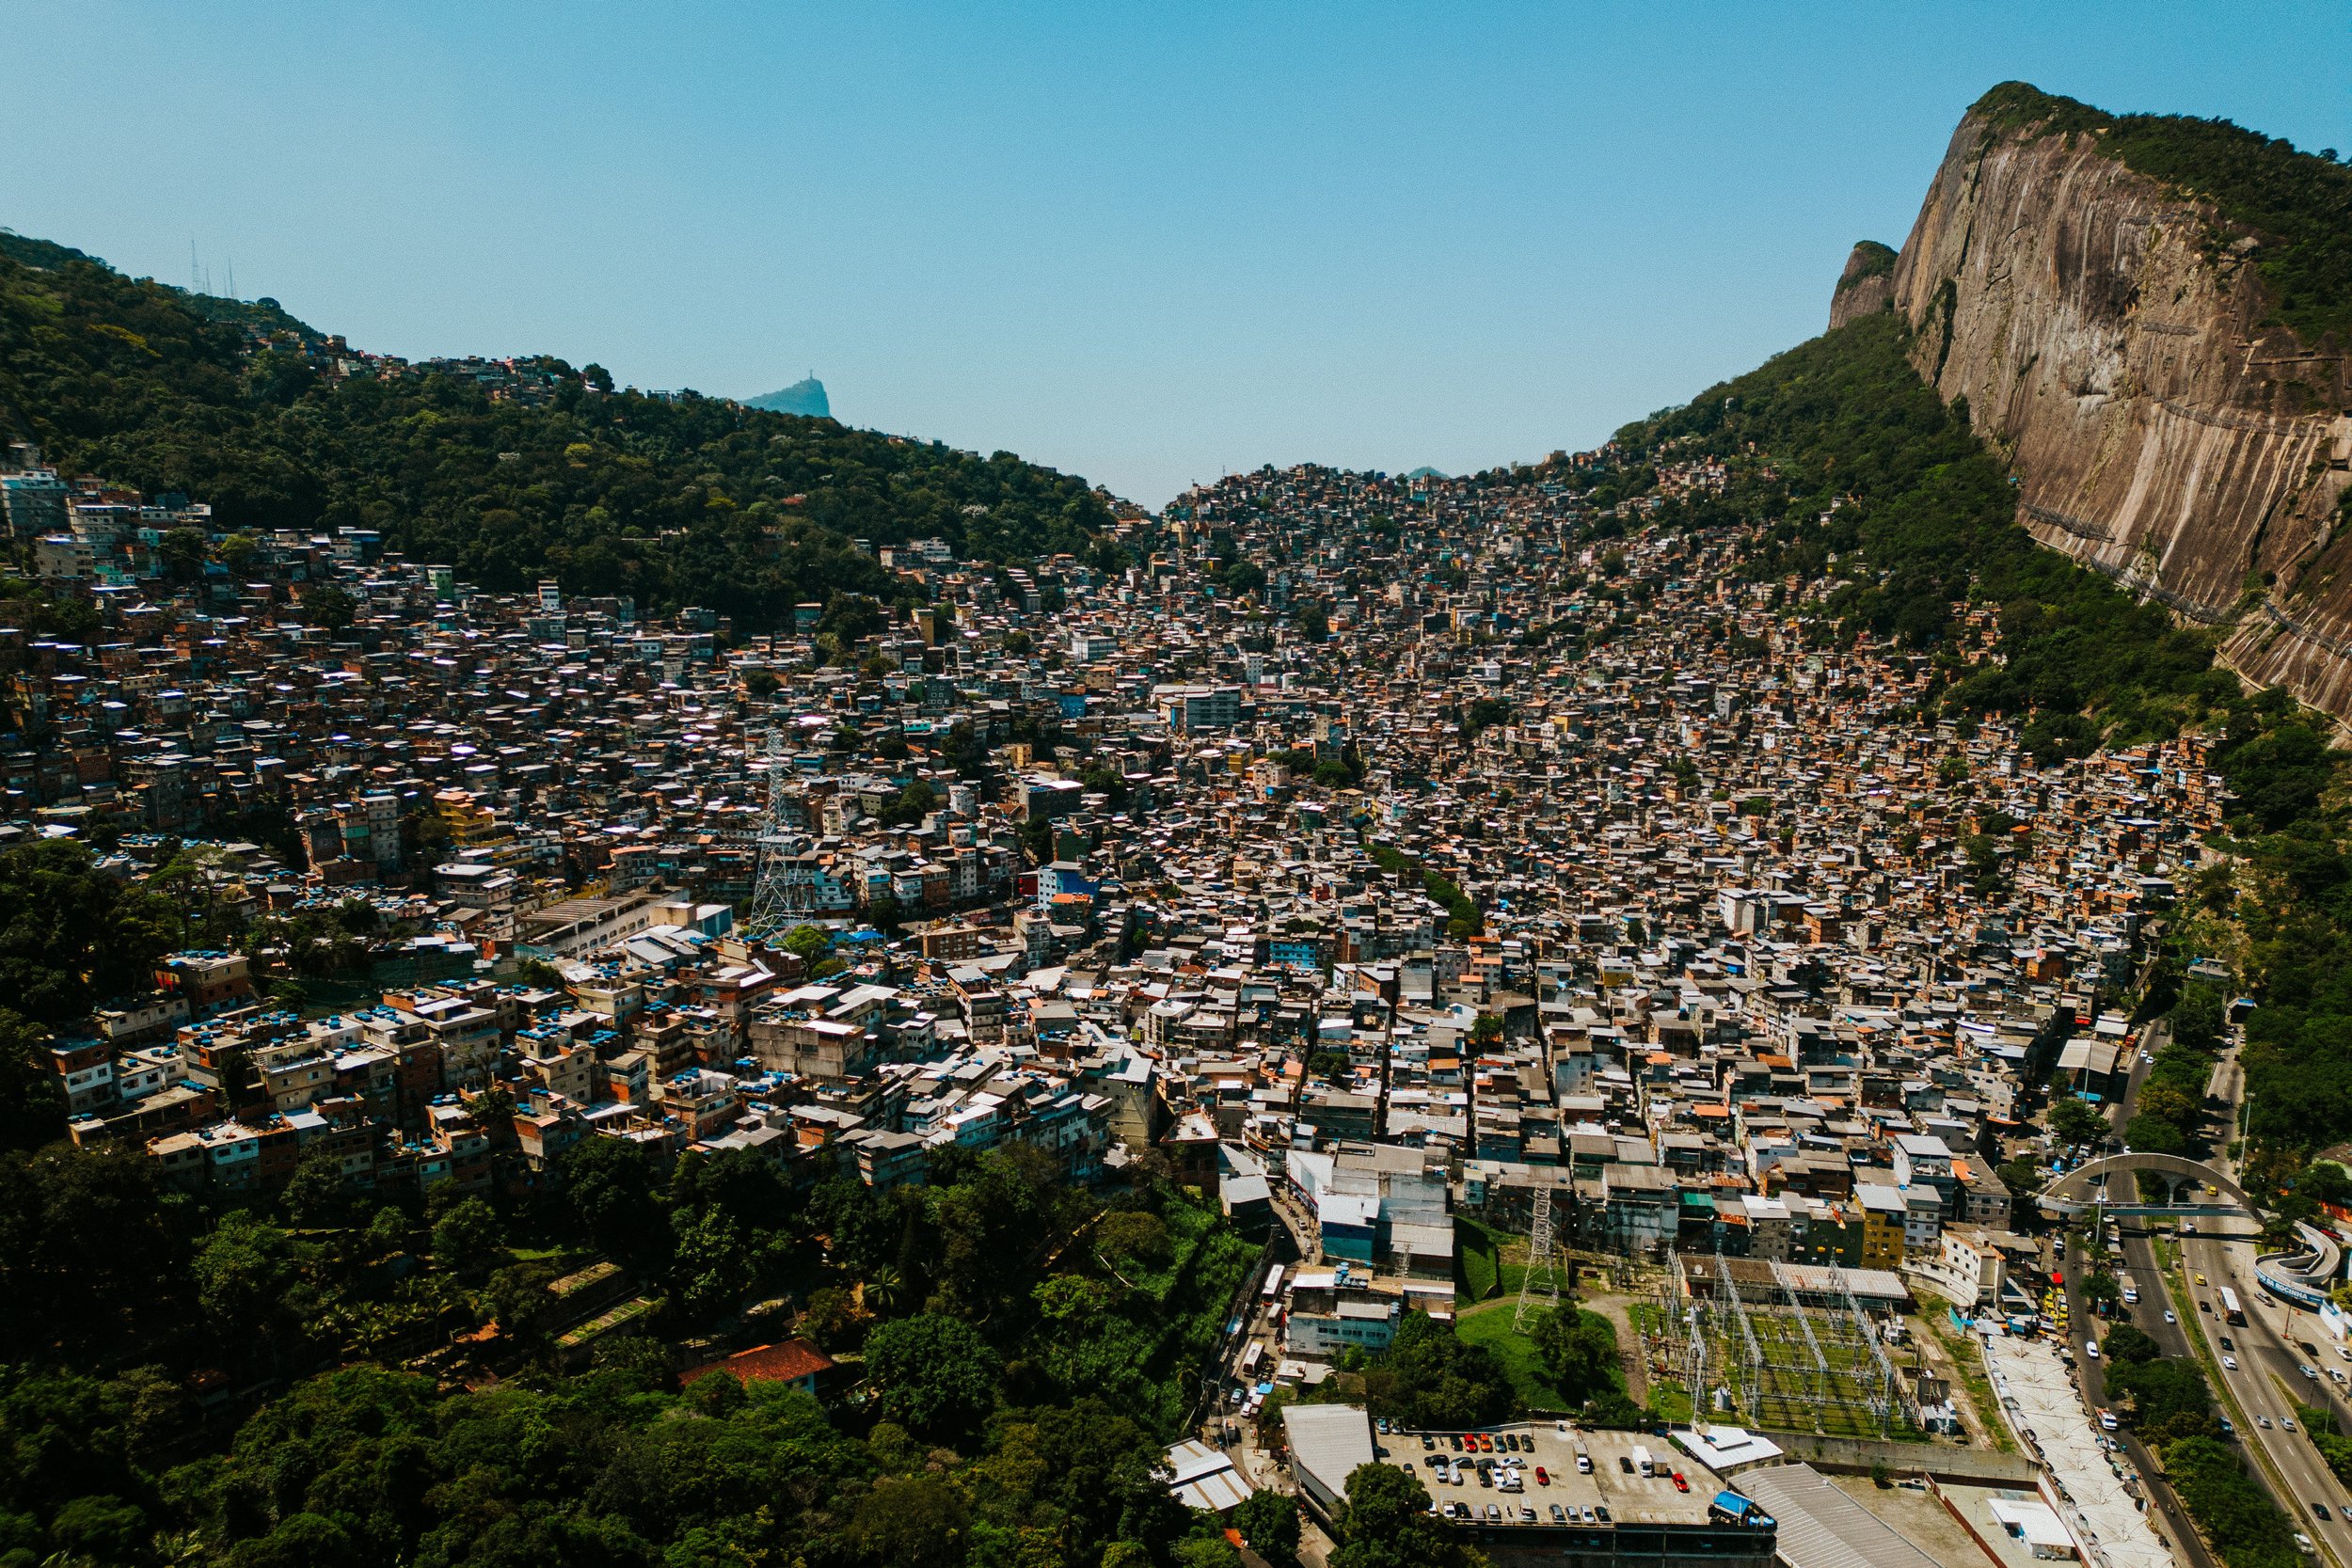 favela-da-rocinha-rio-de-janeiro-guia-turistico-para-favela-ricardo-franzen-producao-de-filme-documentario-educacao-na-favela-rio-de-janeiro-rocinha-5.jpg